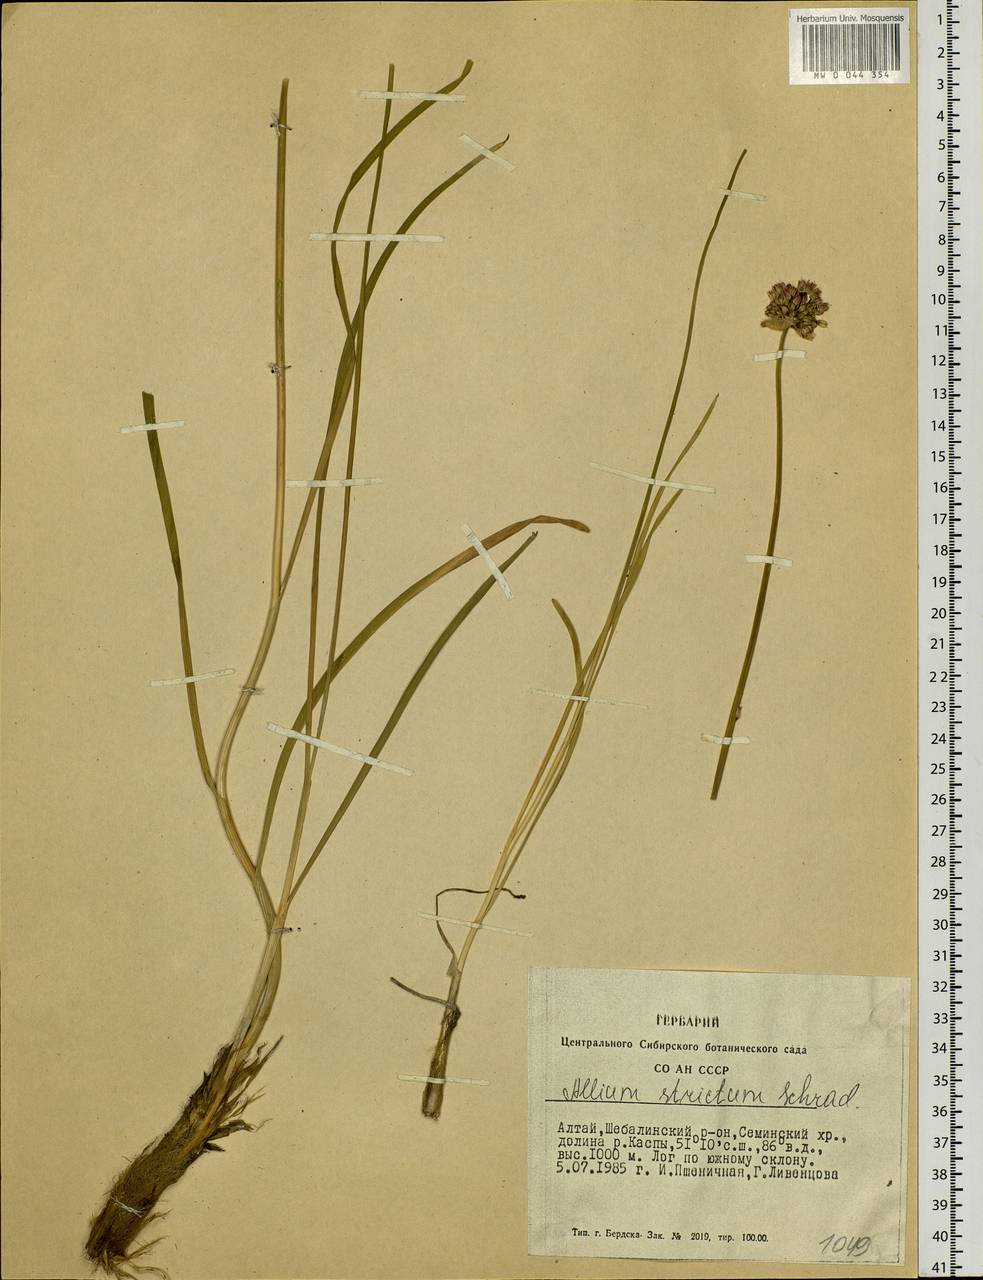 Allium strictum Schrad., Siberia, Altai & Sayany Mountains (S2) (Russia)